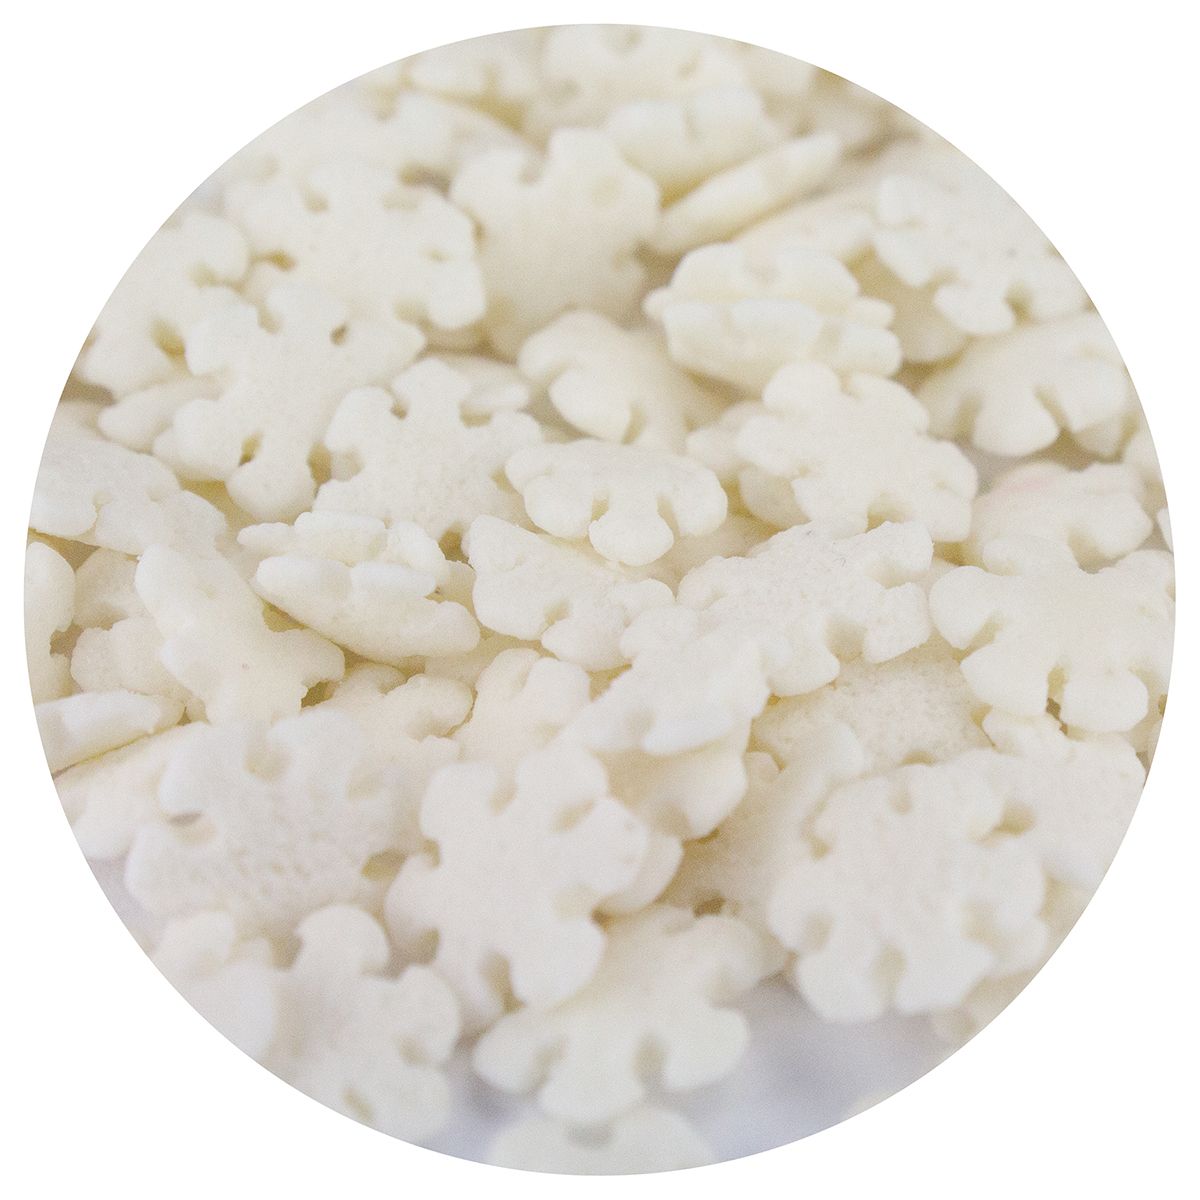 CK White Snowflakes Edible Confetti